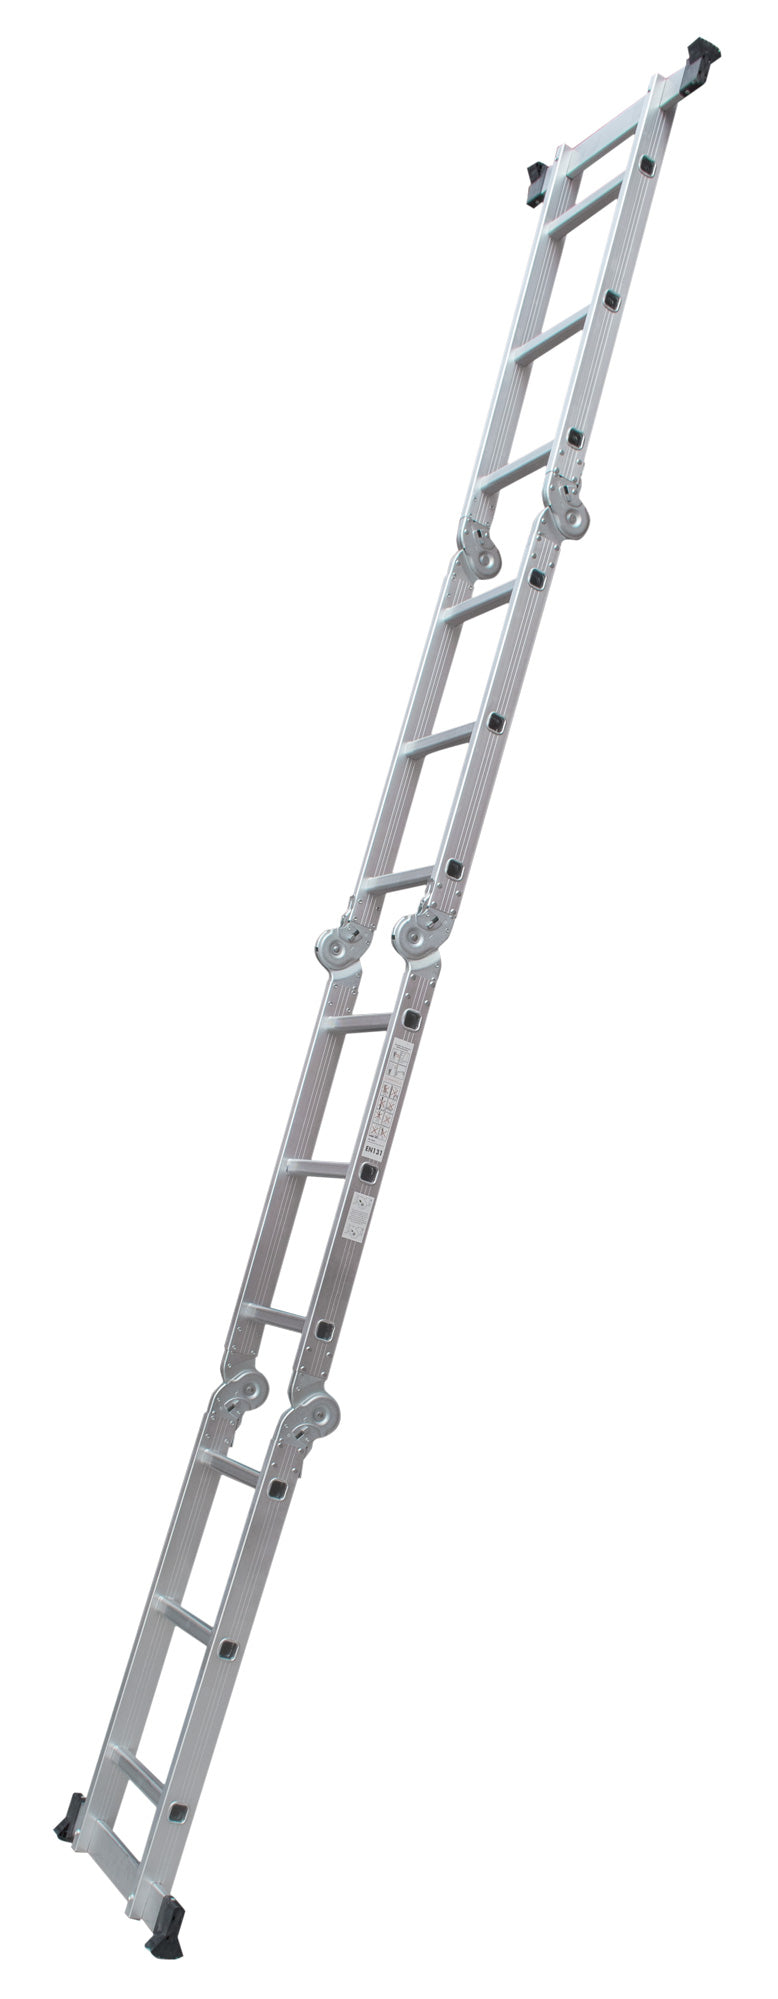 Escalera de Aluminio Multiposiciones Reforzada